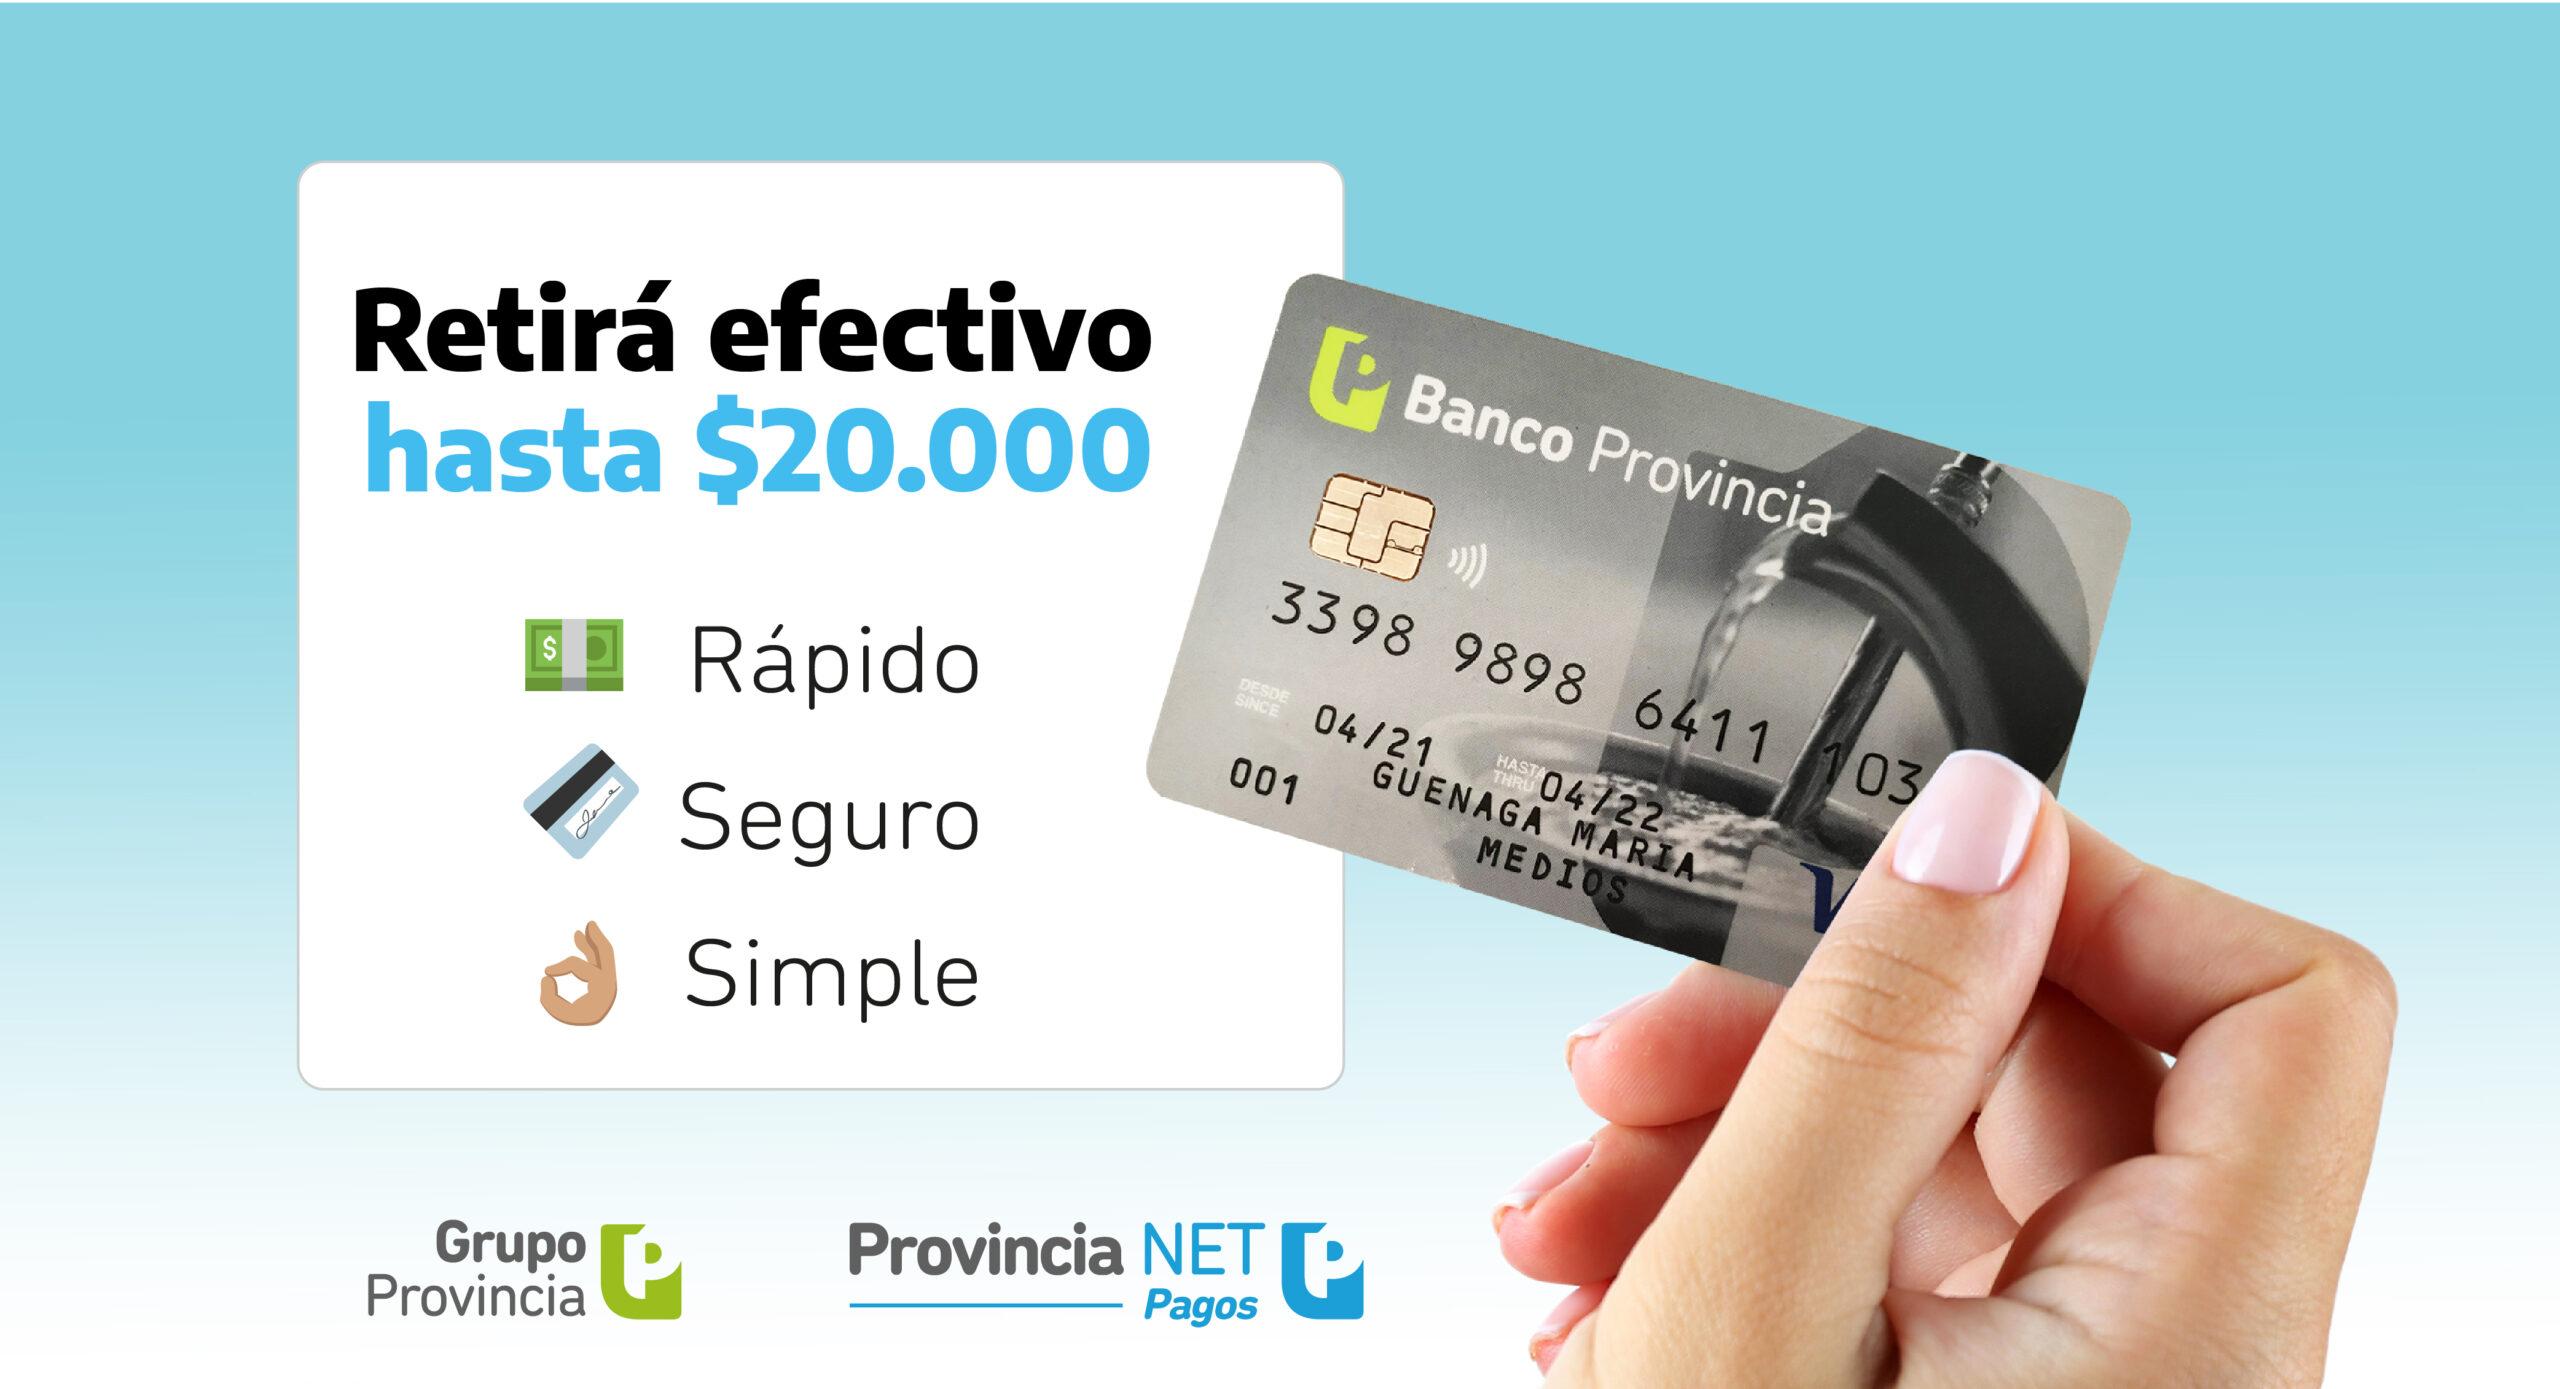 Provincia NET Pagos, un canal extrabancario que permite el retiro de hasta $ 20.000